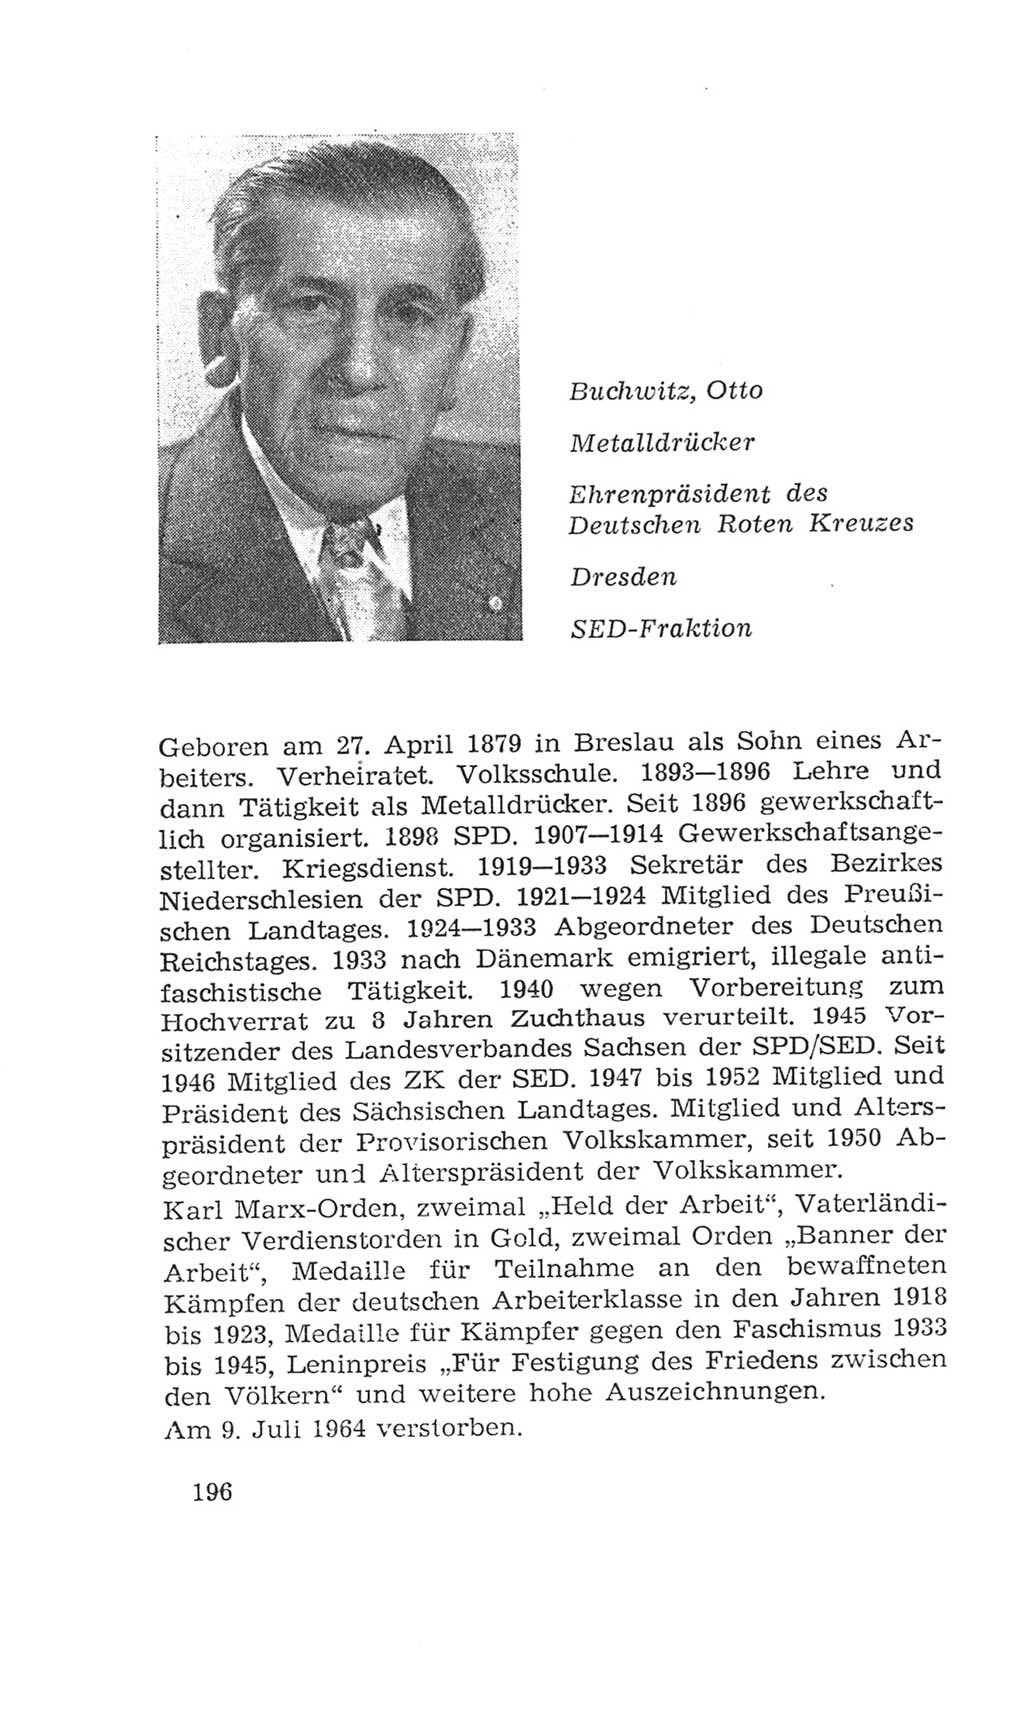 Volkskammer (VK) der Deutschen Demokratischen Republik (DDR), 4. Wahlperiode 1963-1967, Seite 196 (VK. DDR 4. WP. 1963-1967, S. 196)